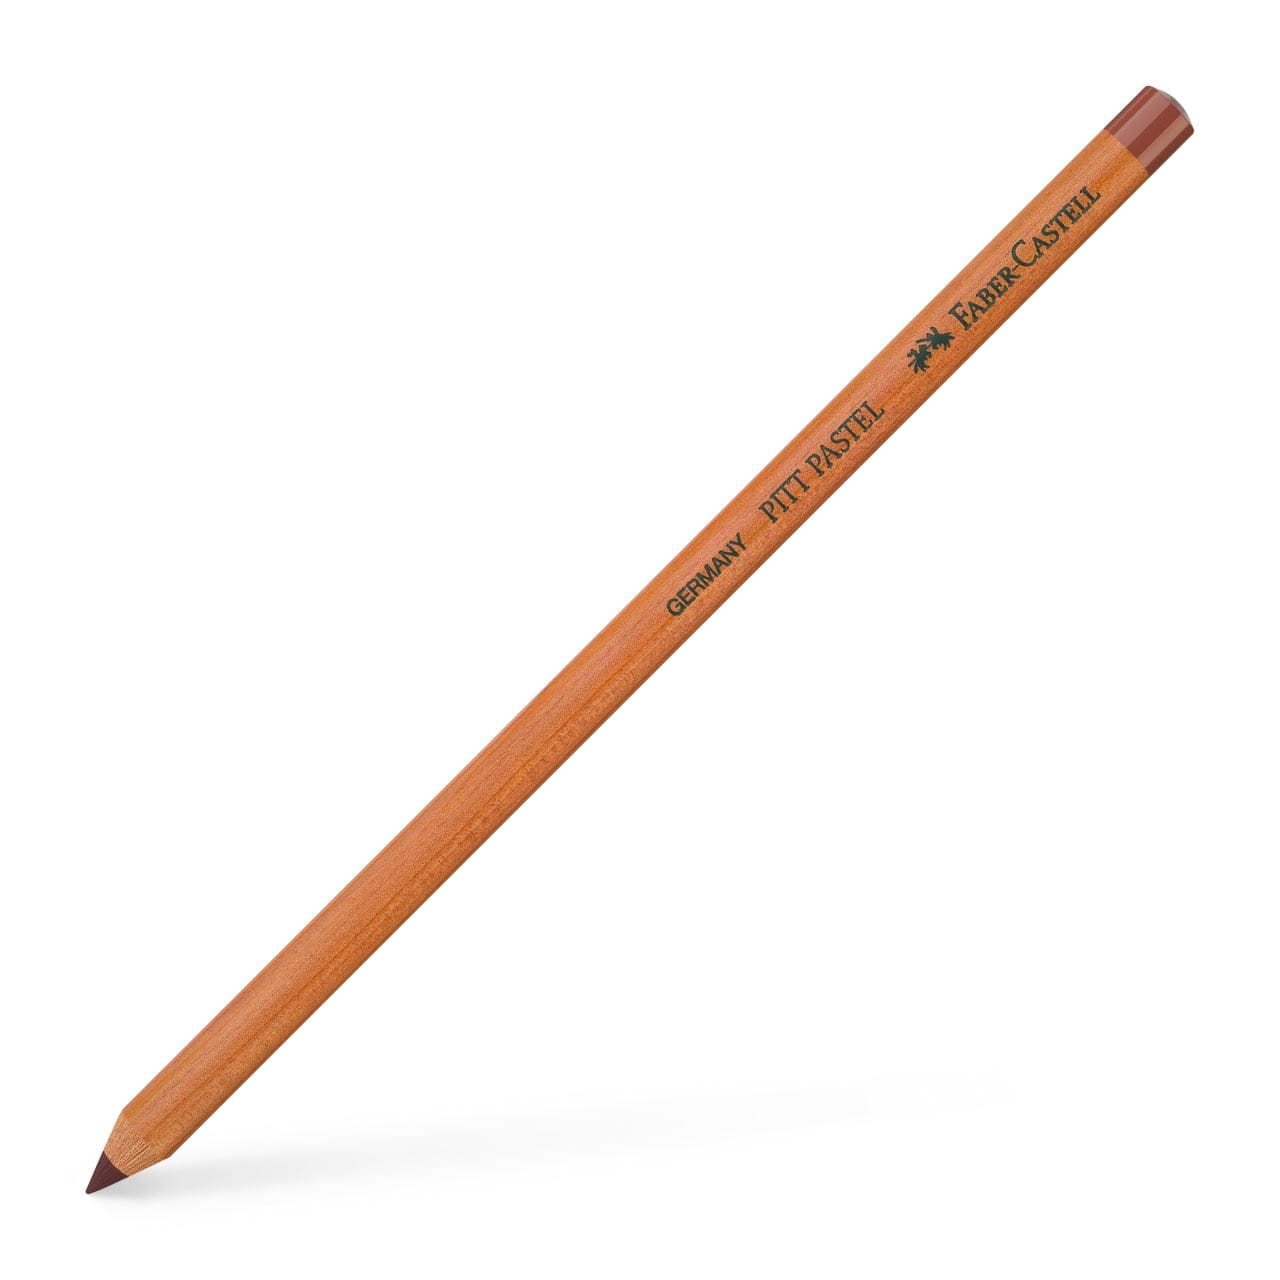 Faber-Castell - Pitt Pastel pencil, caput mortuum